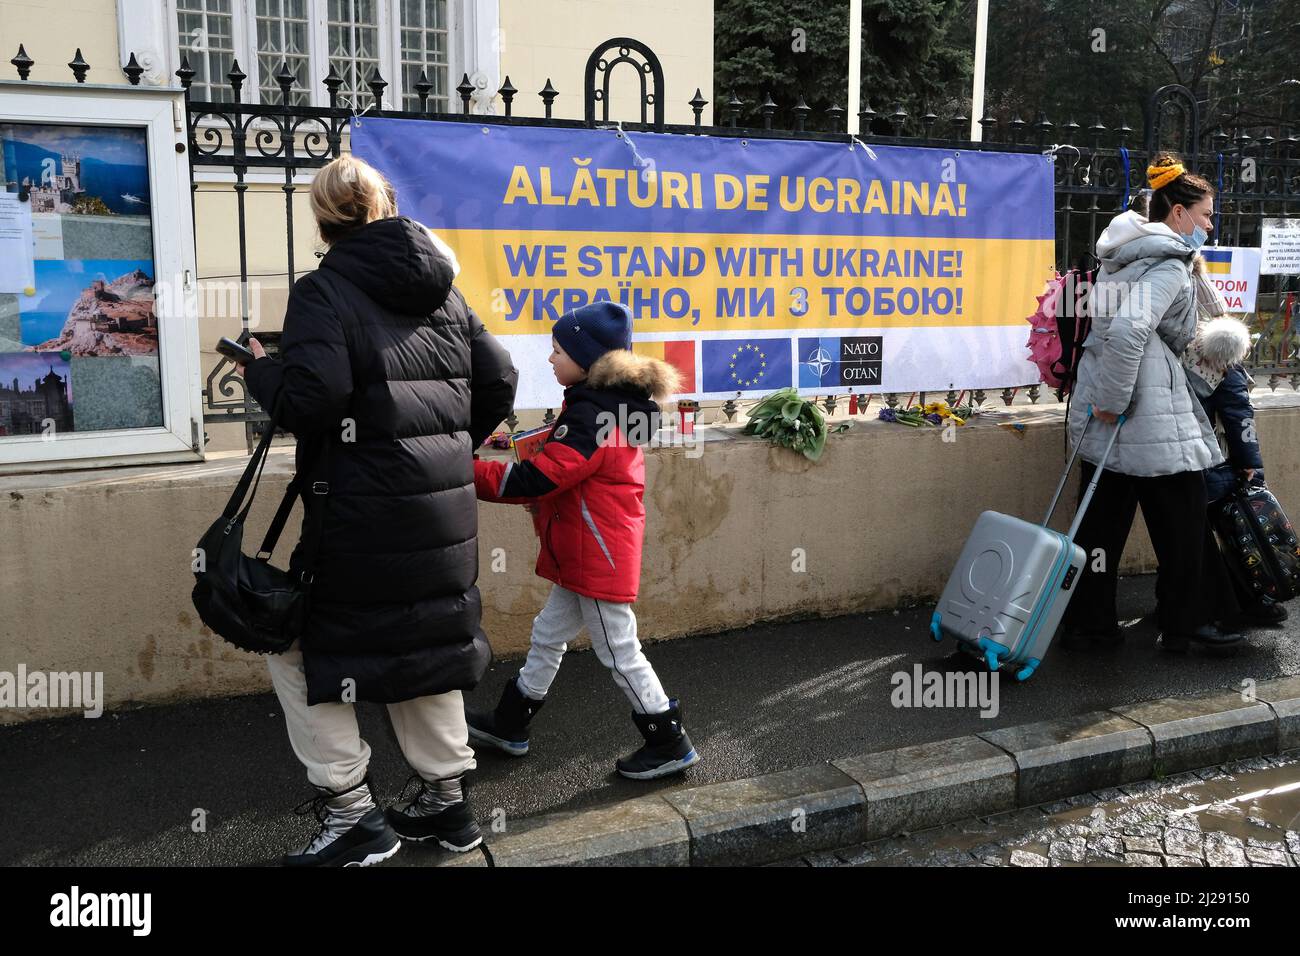 Botschaft der ukraine - bukarest - rumänien Stockfoto